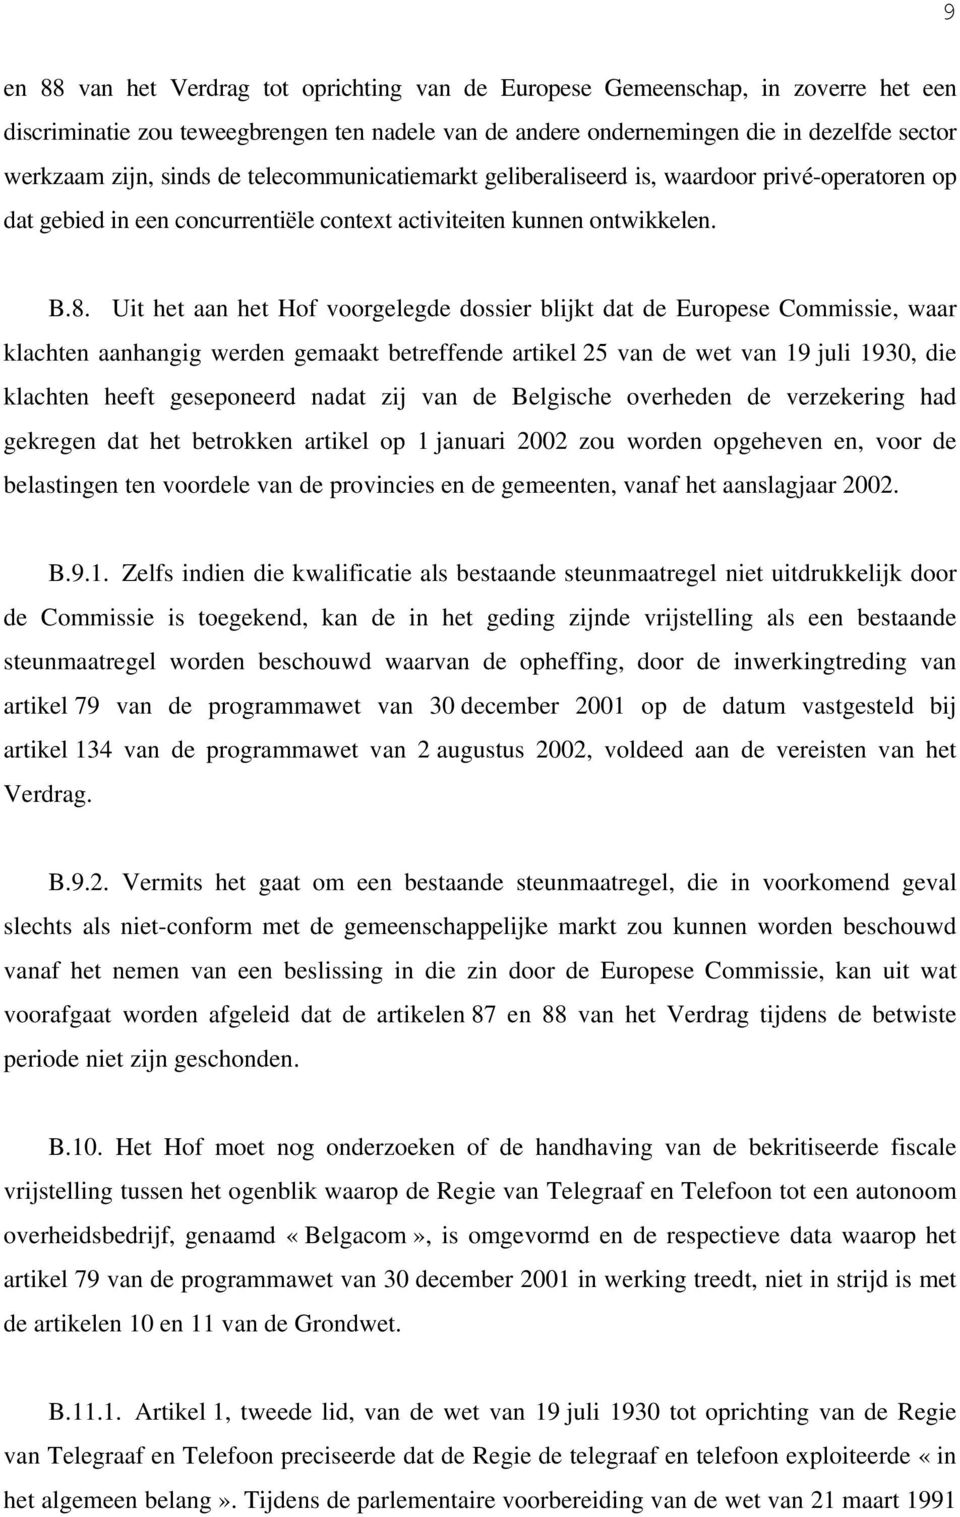 Uit het aan het Hof voorgelegde dossier blijkt dat de Europese Commissie, waar klachten aanhangig werden gemaakt betreffende artikel 25 van de wet van 19 juli 1930, die klachten heeft geseponeerd